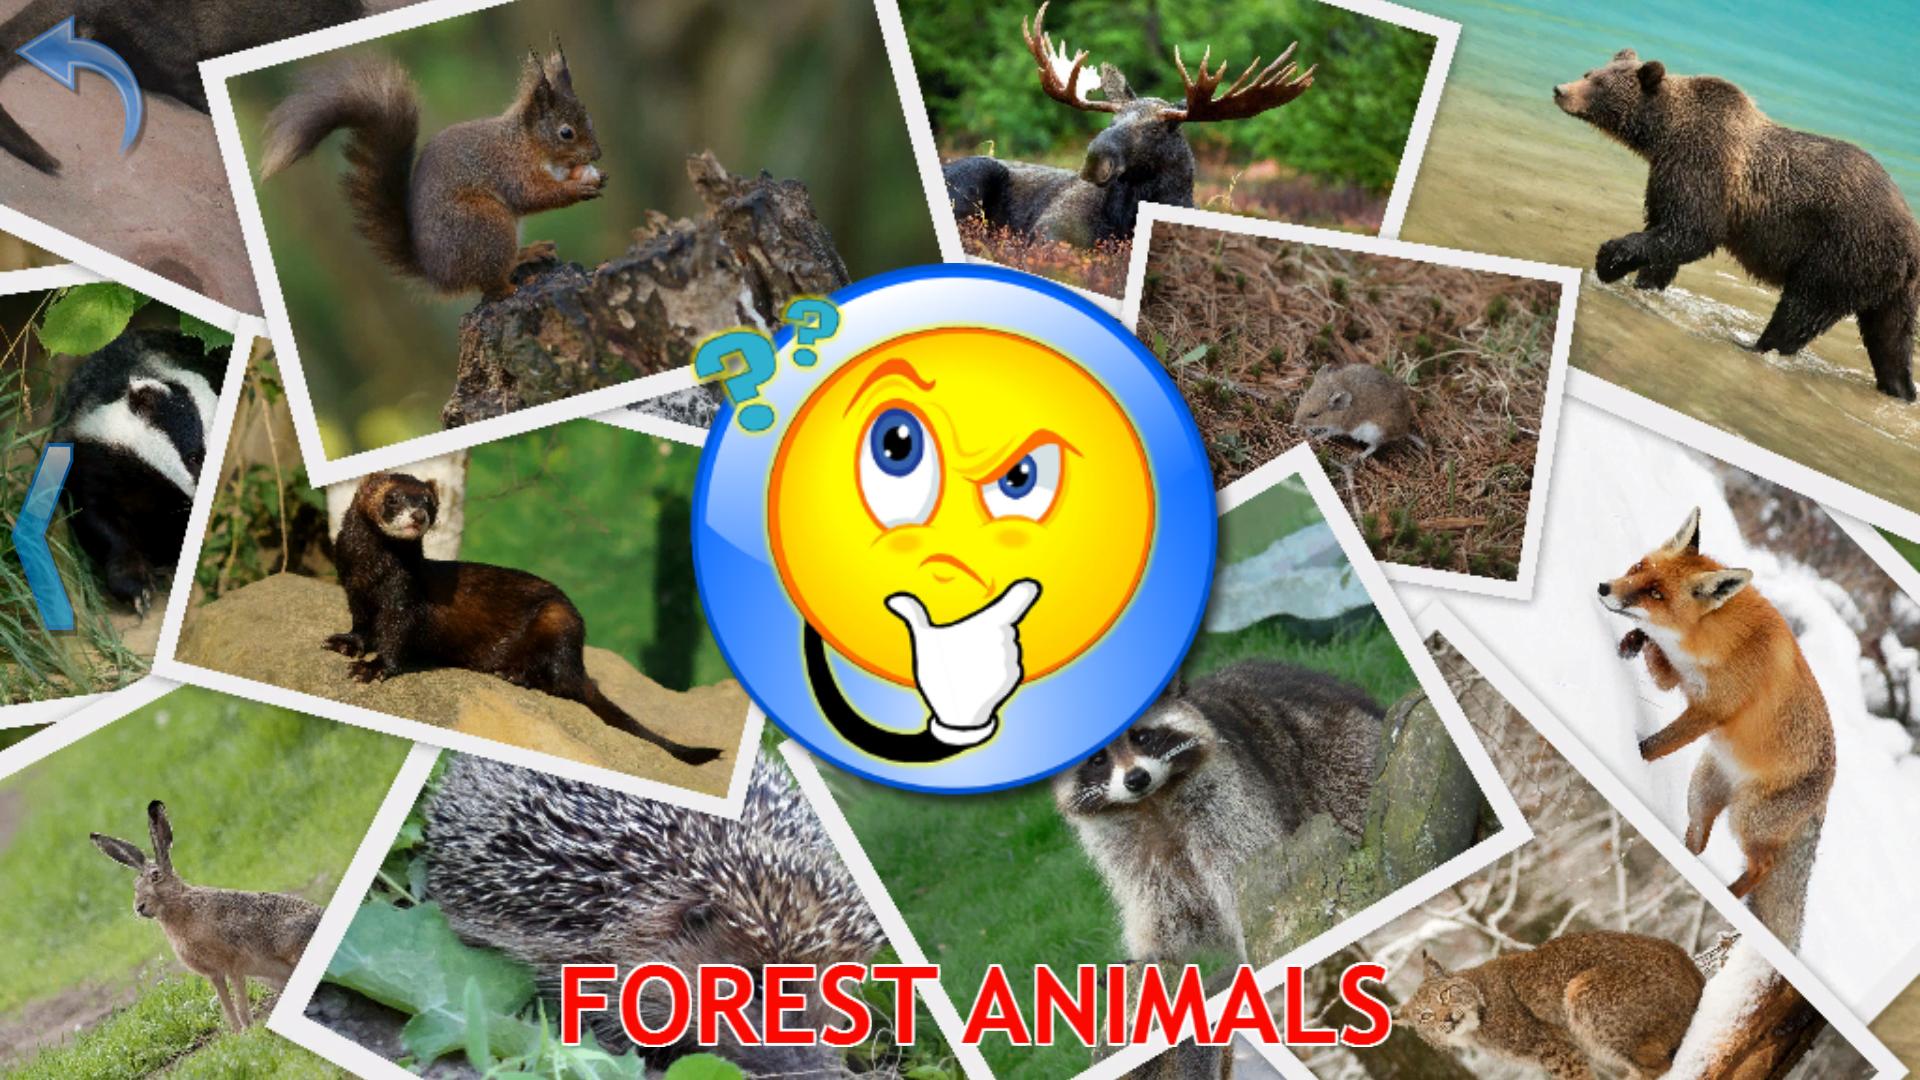 Good wild pets. Изучаем лесных животных. Животные для детей фото обучающие. Малыш учит животных животные леса. Cleverbit малыш учит животных.